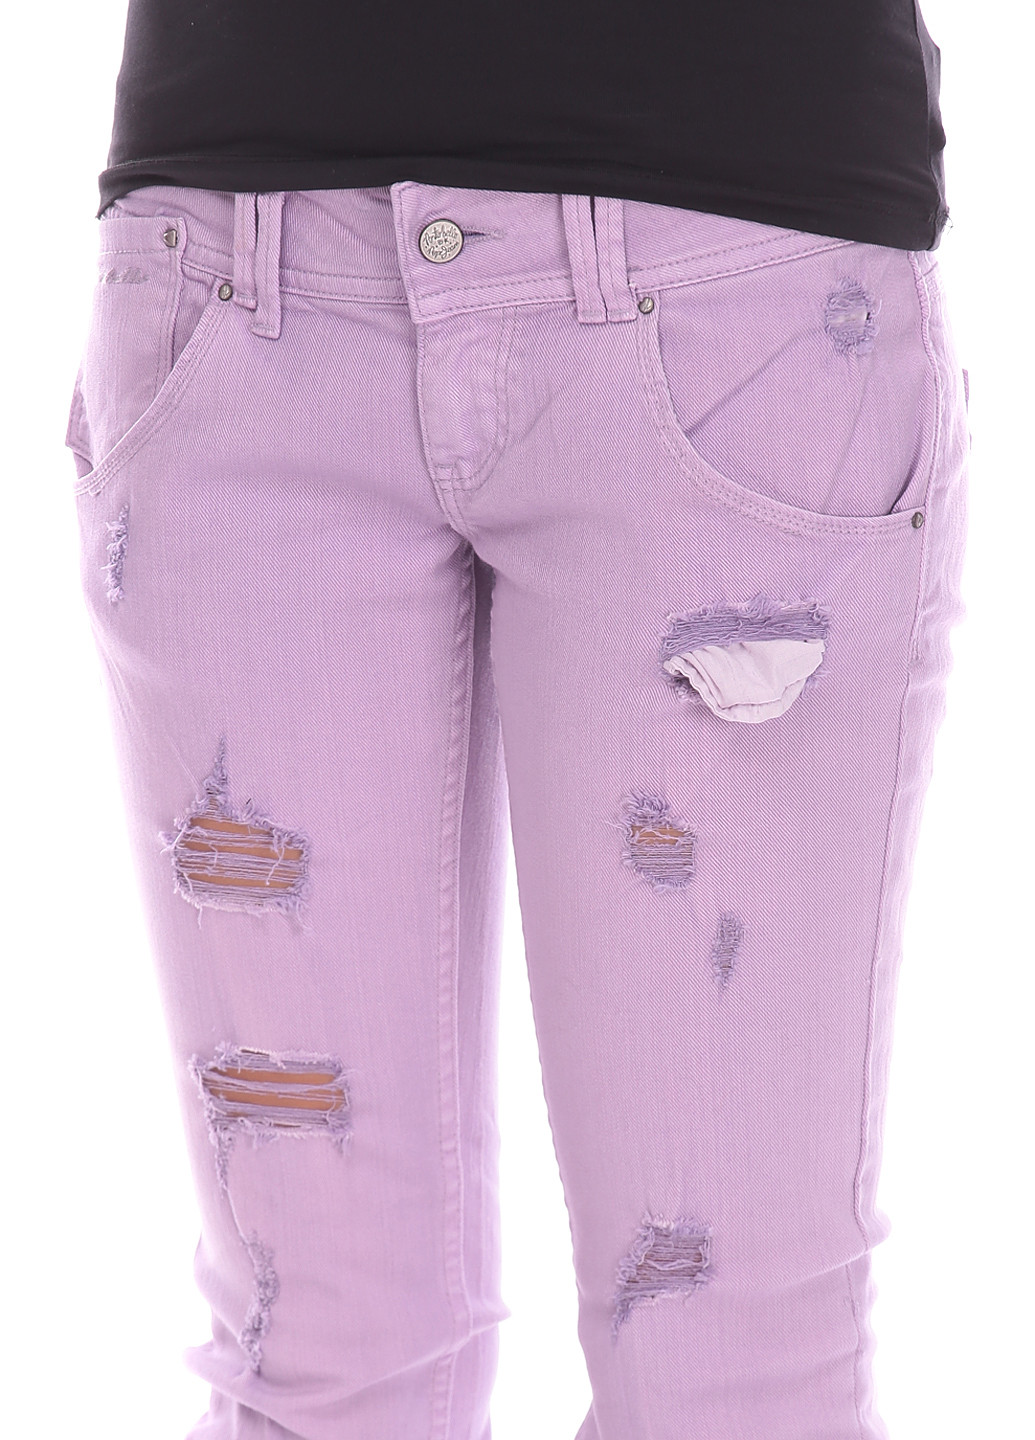 Сиреневые джинсовые летние прямые брюки Portobello By Pepe Jeans